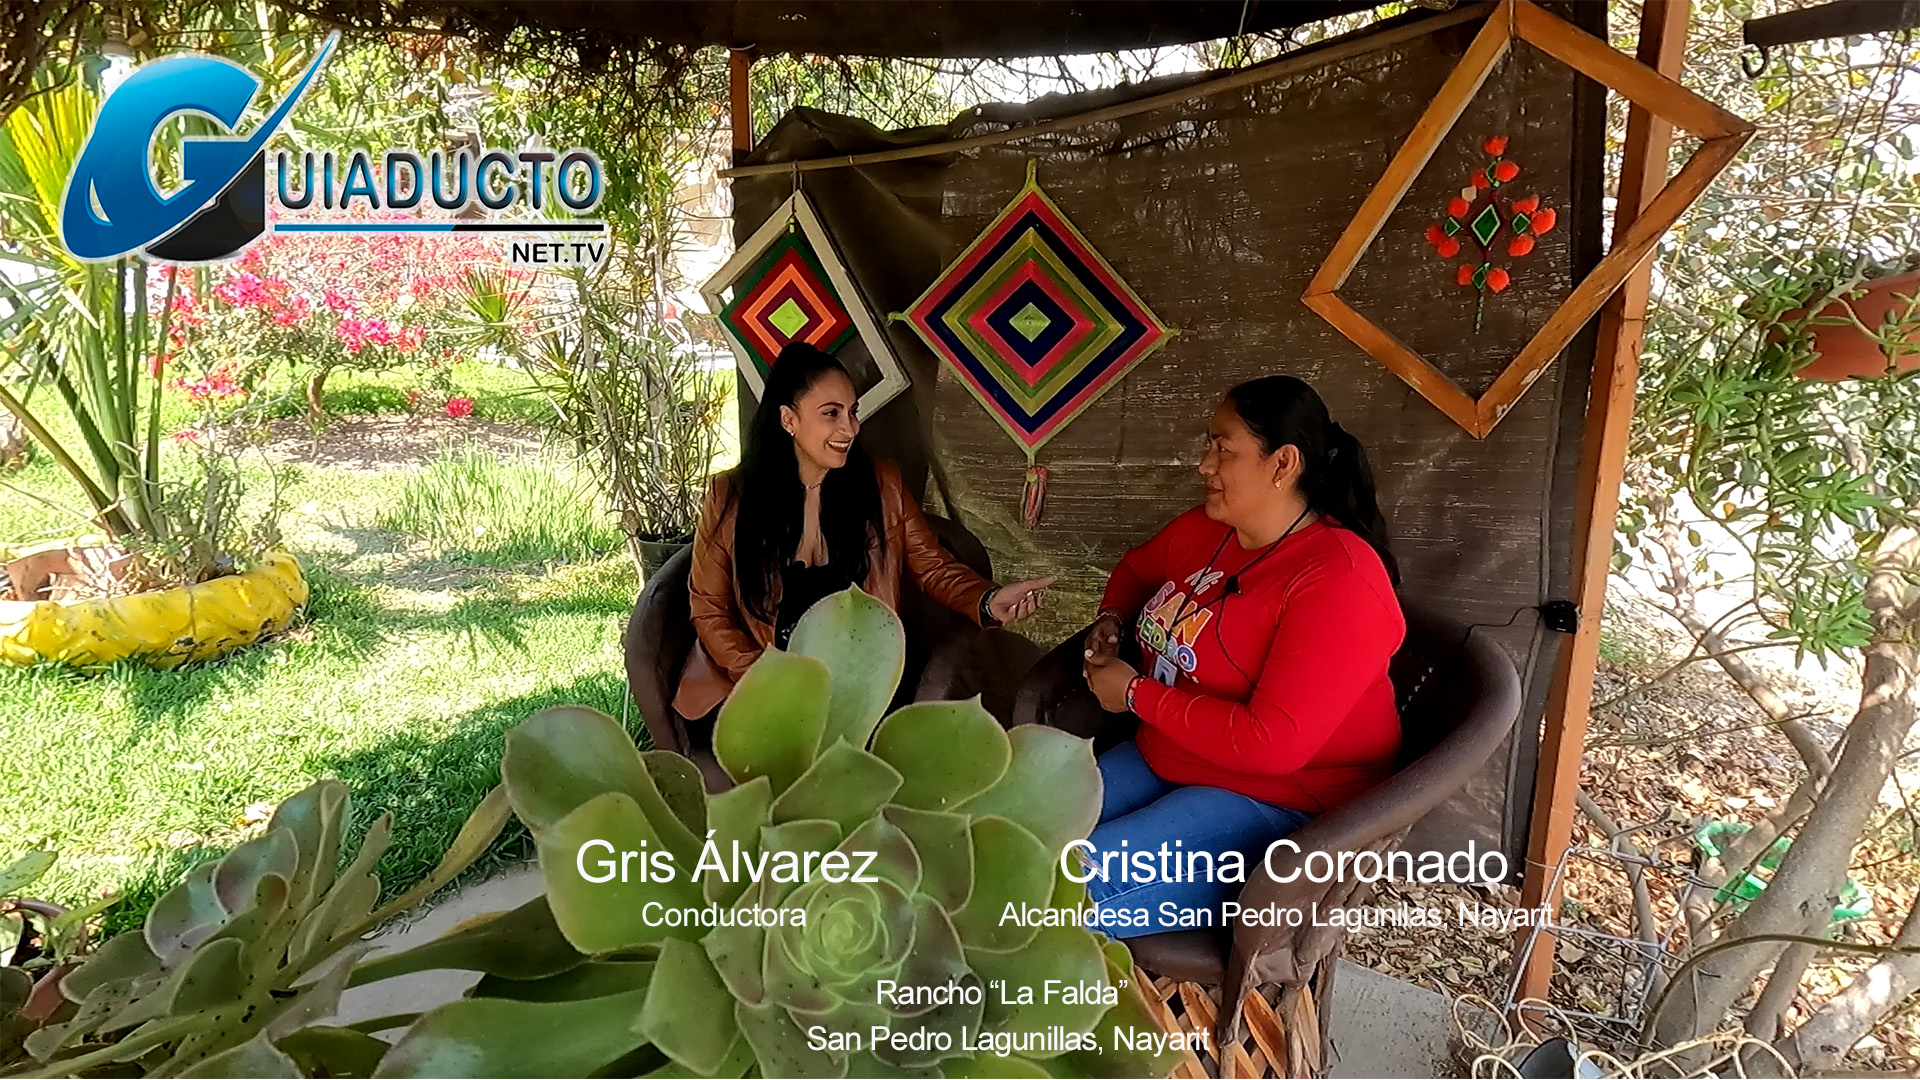 Alcaldesa de San Pedro Lagunillas Cristina Coronado, invita a conocer el municipio en entrevista con Gris Alvarez conductora de TURISMO GUIADUCTO